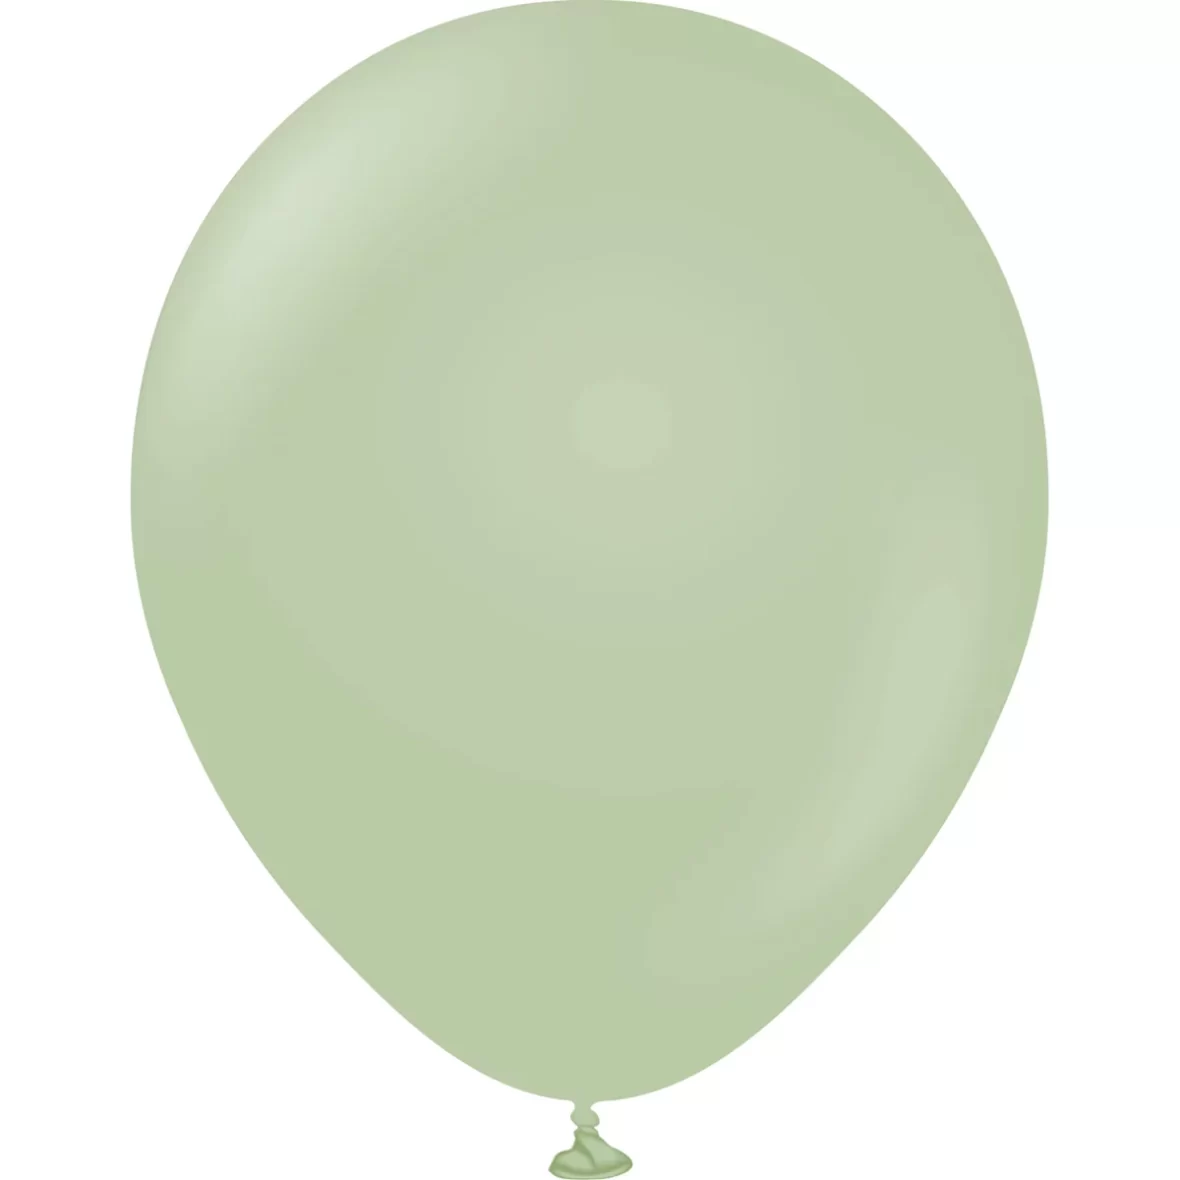 979-baloane-jumbo-ovale-45-cm-1